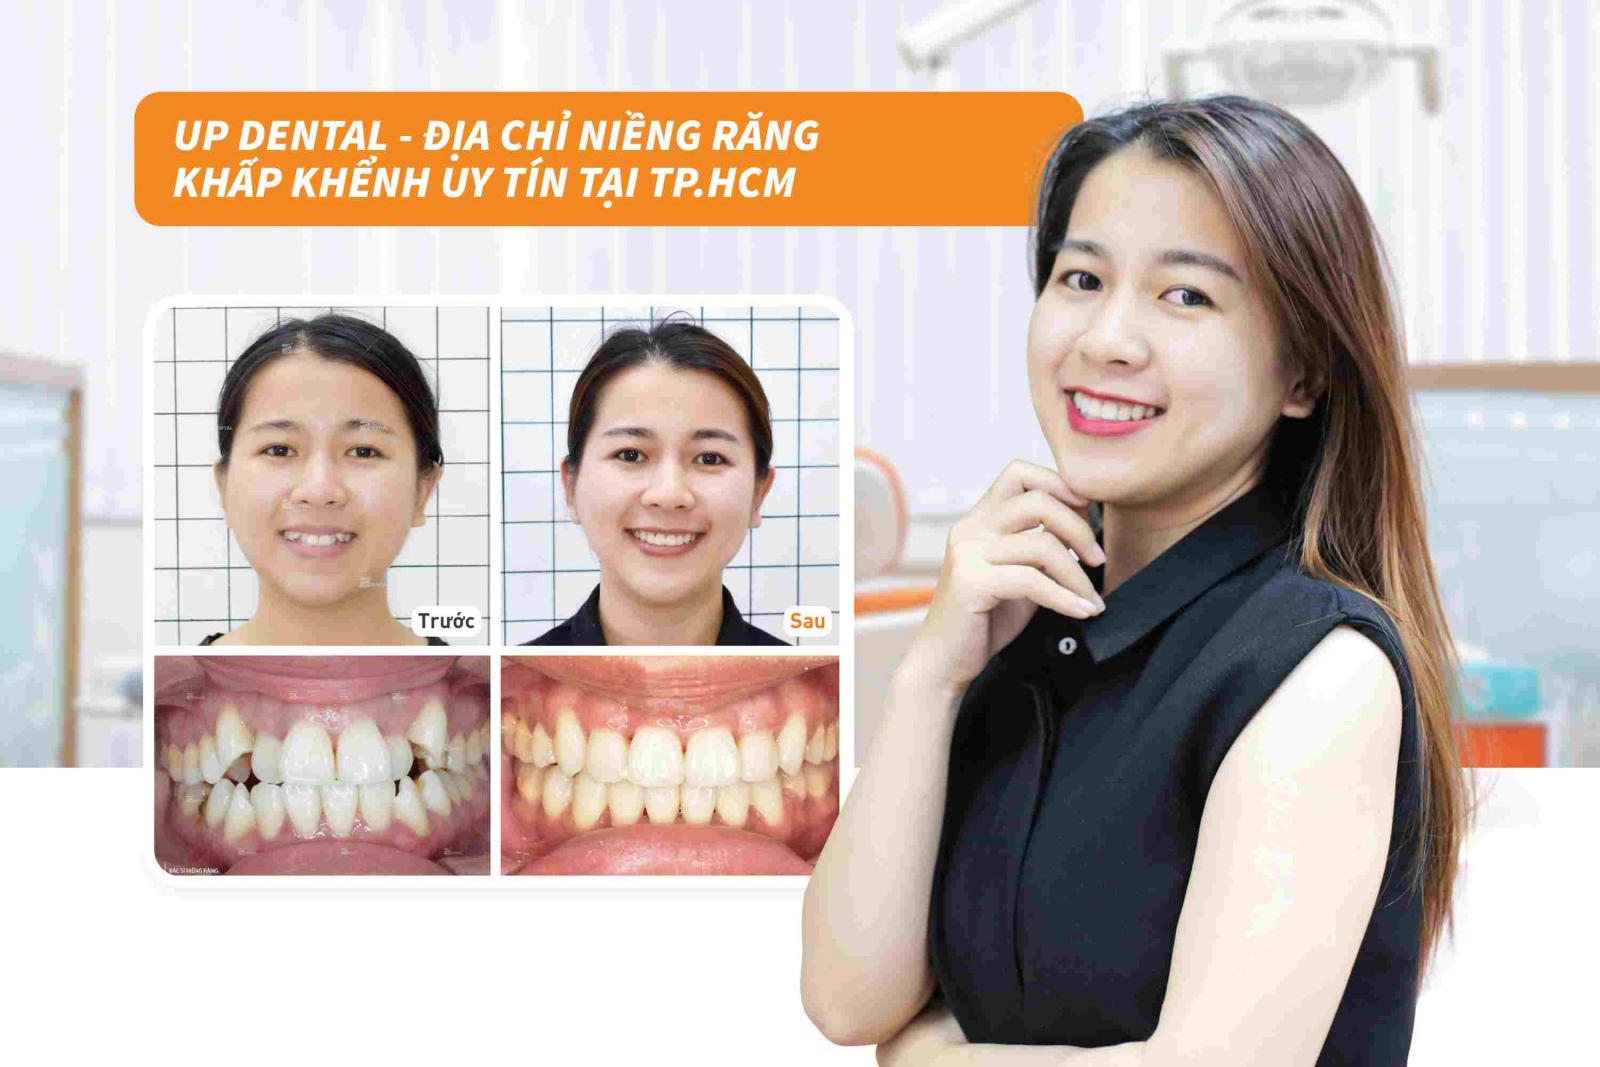 Up Dental - Địa chỉ niềng răng khấp khểnh uy tín tại TP.HCM